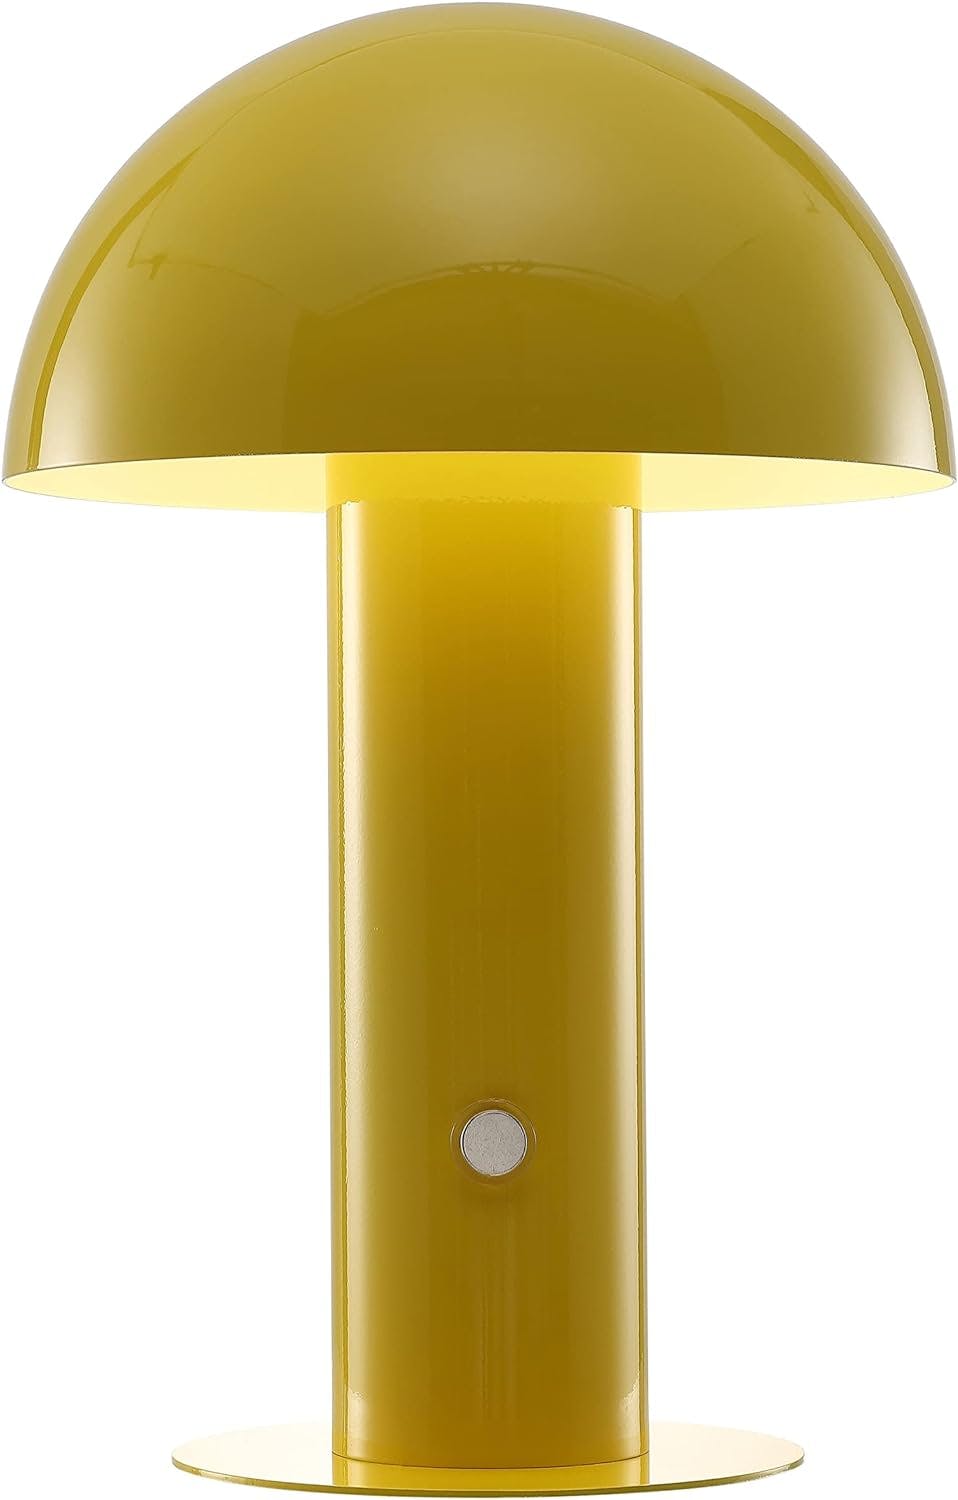 Boletus 10.75" Bohemian Coastal Yellow Cordless Mushroom LED Lamp